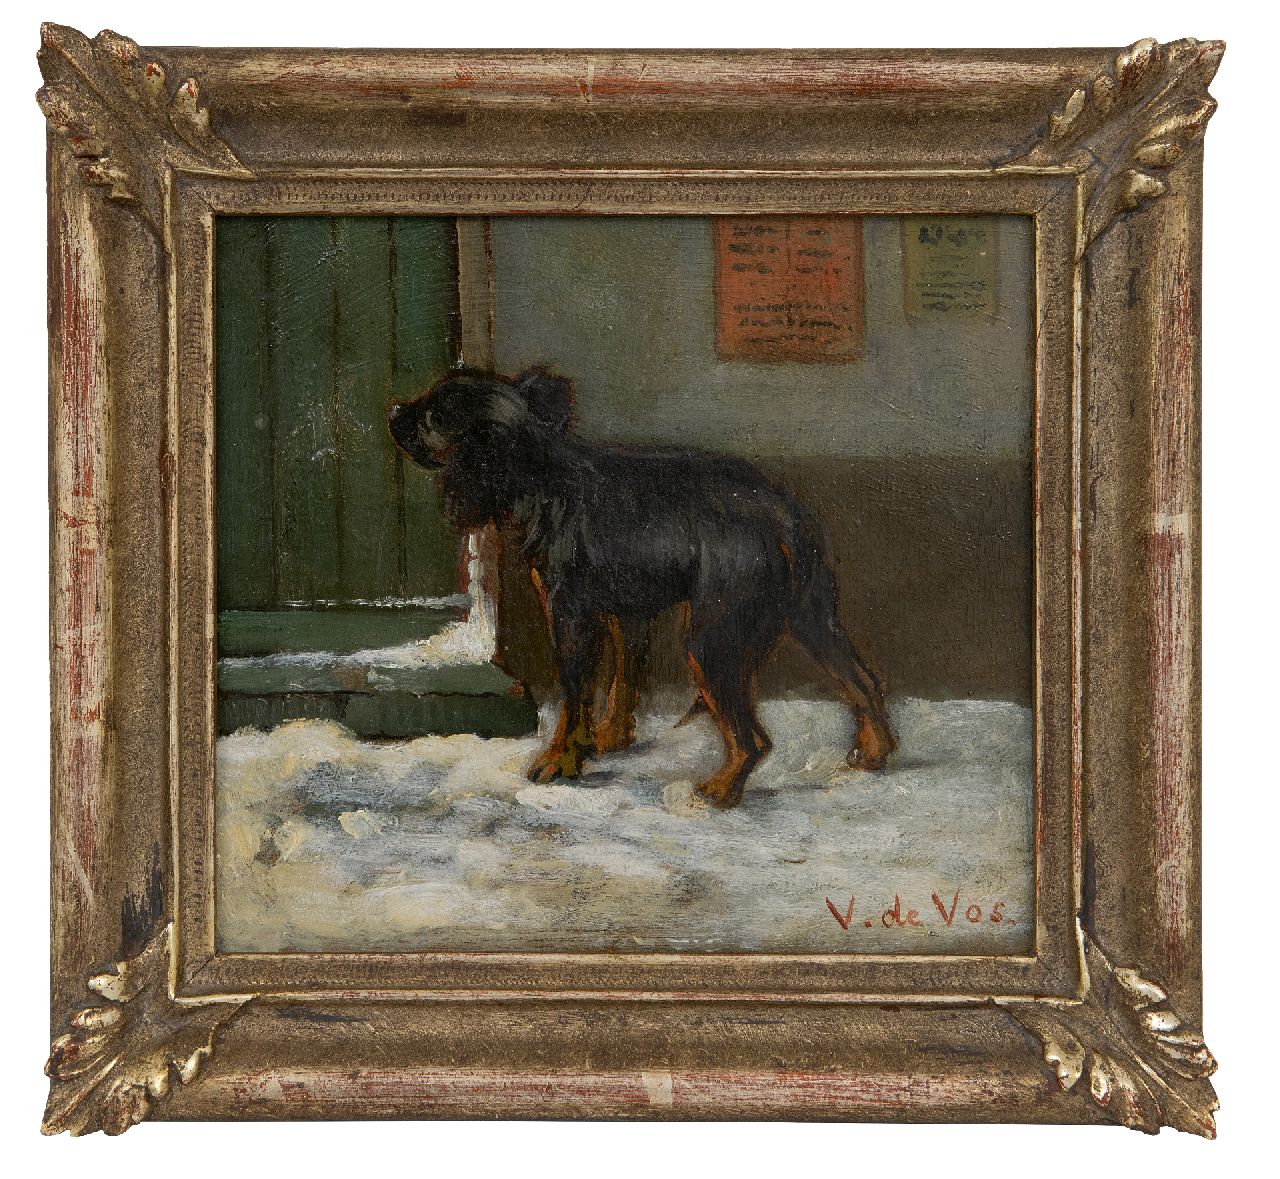 Vos V. de | Vincent de Vos | Gemälde zum Verkauf angeboten | Am Ziel angekommen, Öl auf Leinwand 15,6 x 17,1 cm, Unterzeichnet u.r.